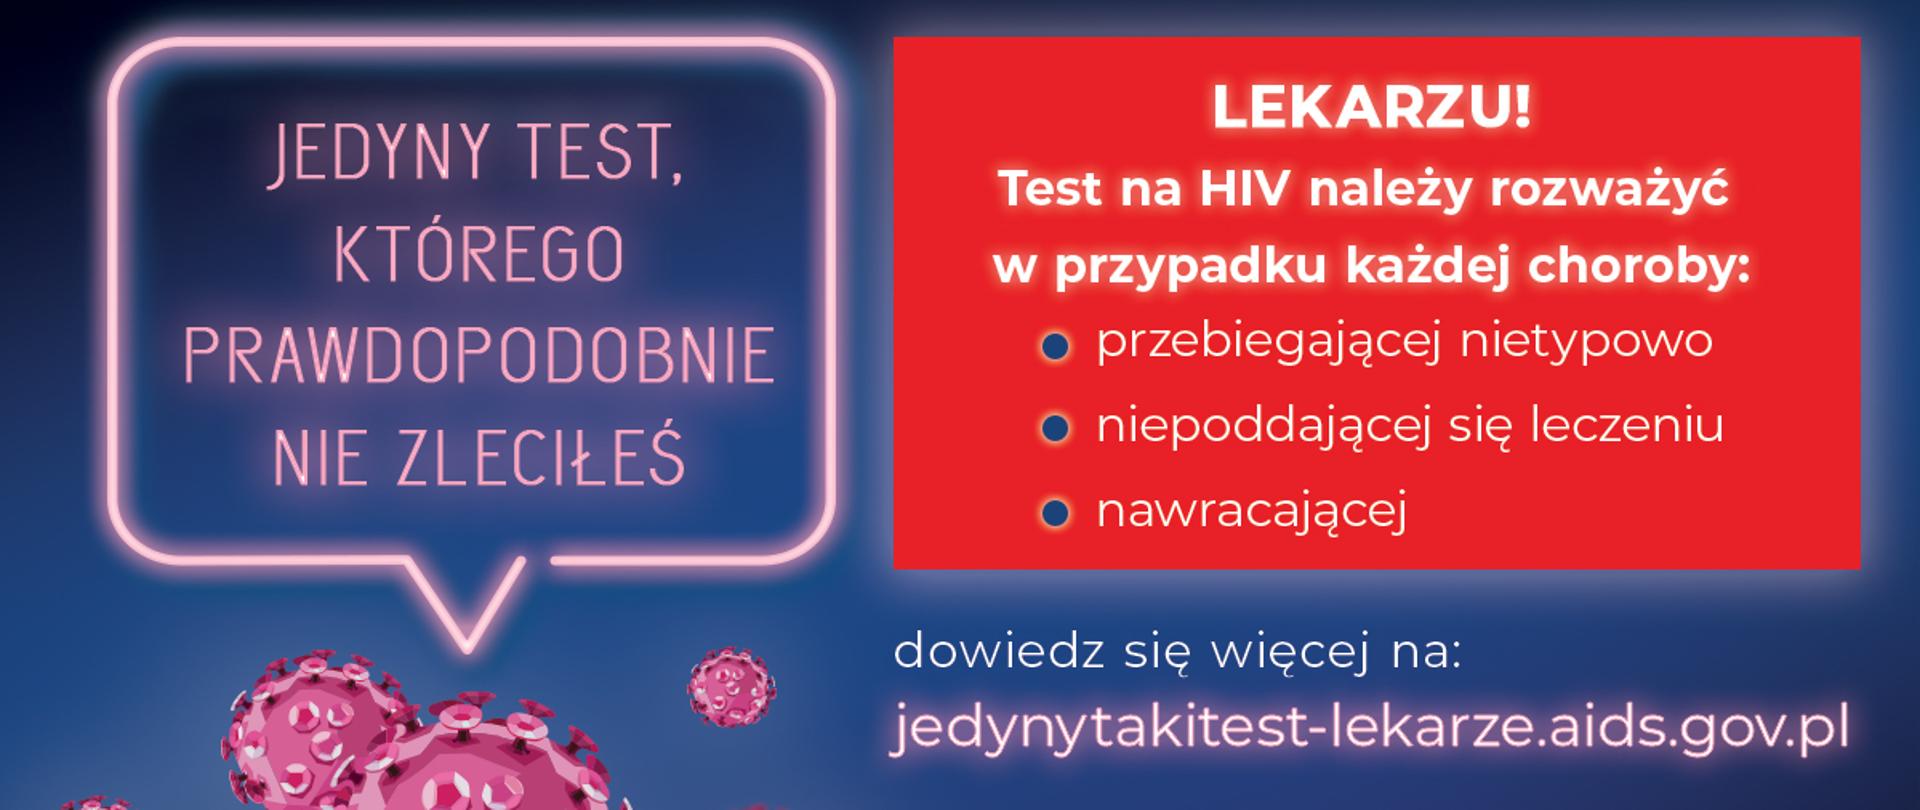 Kampania KC ds. AIDS „ Jedyny taki test, którego prawdopodobnie nie zleciłeś”